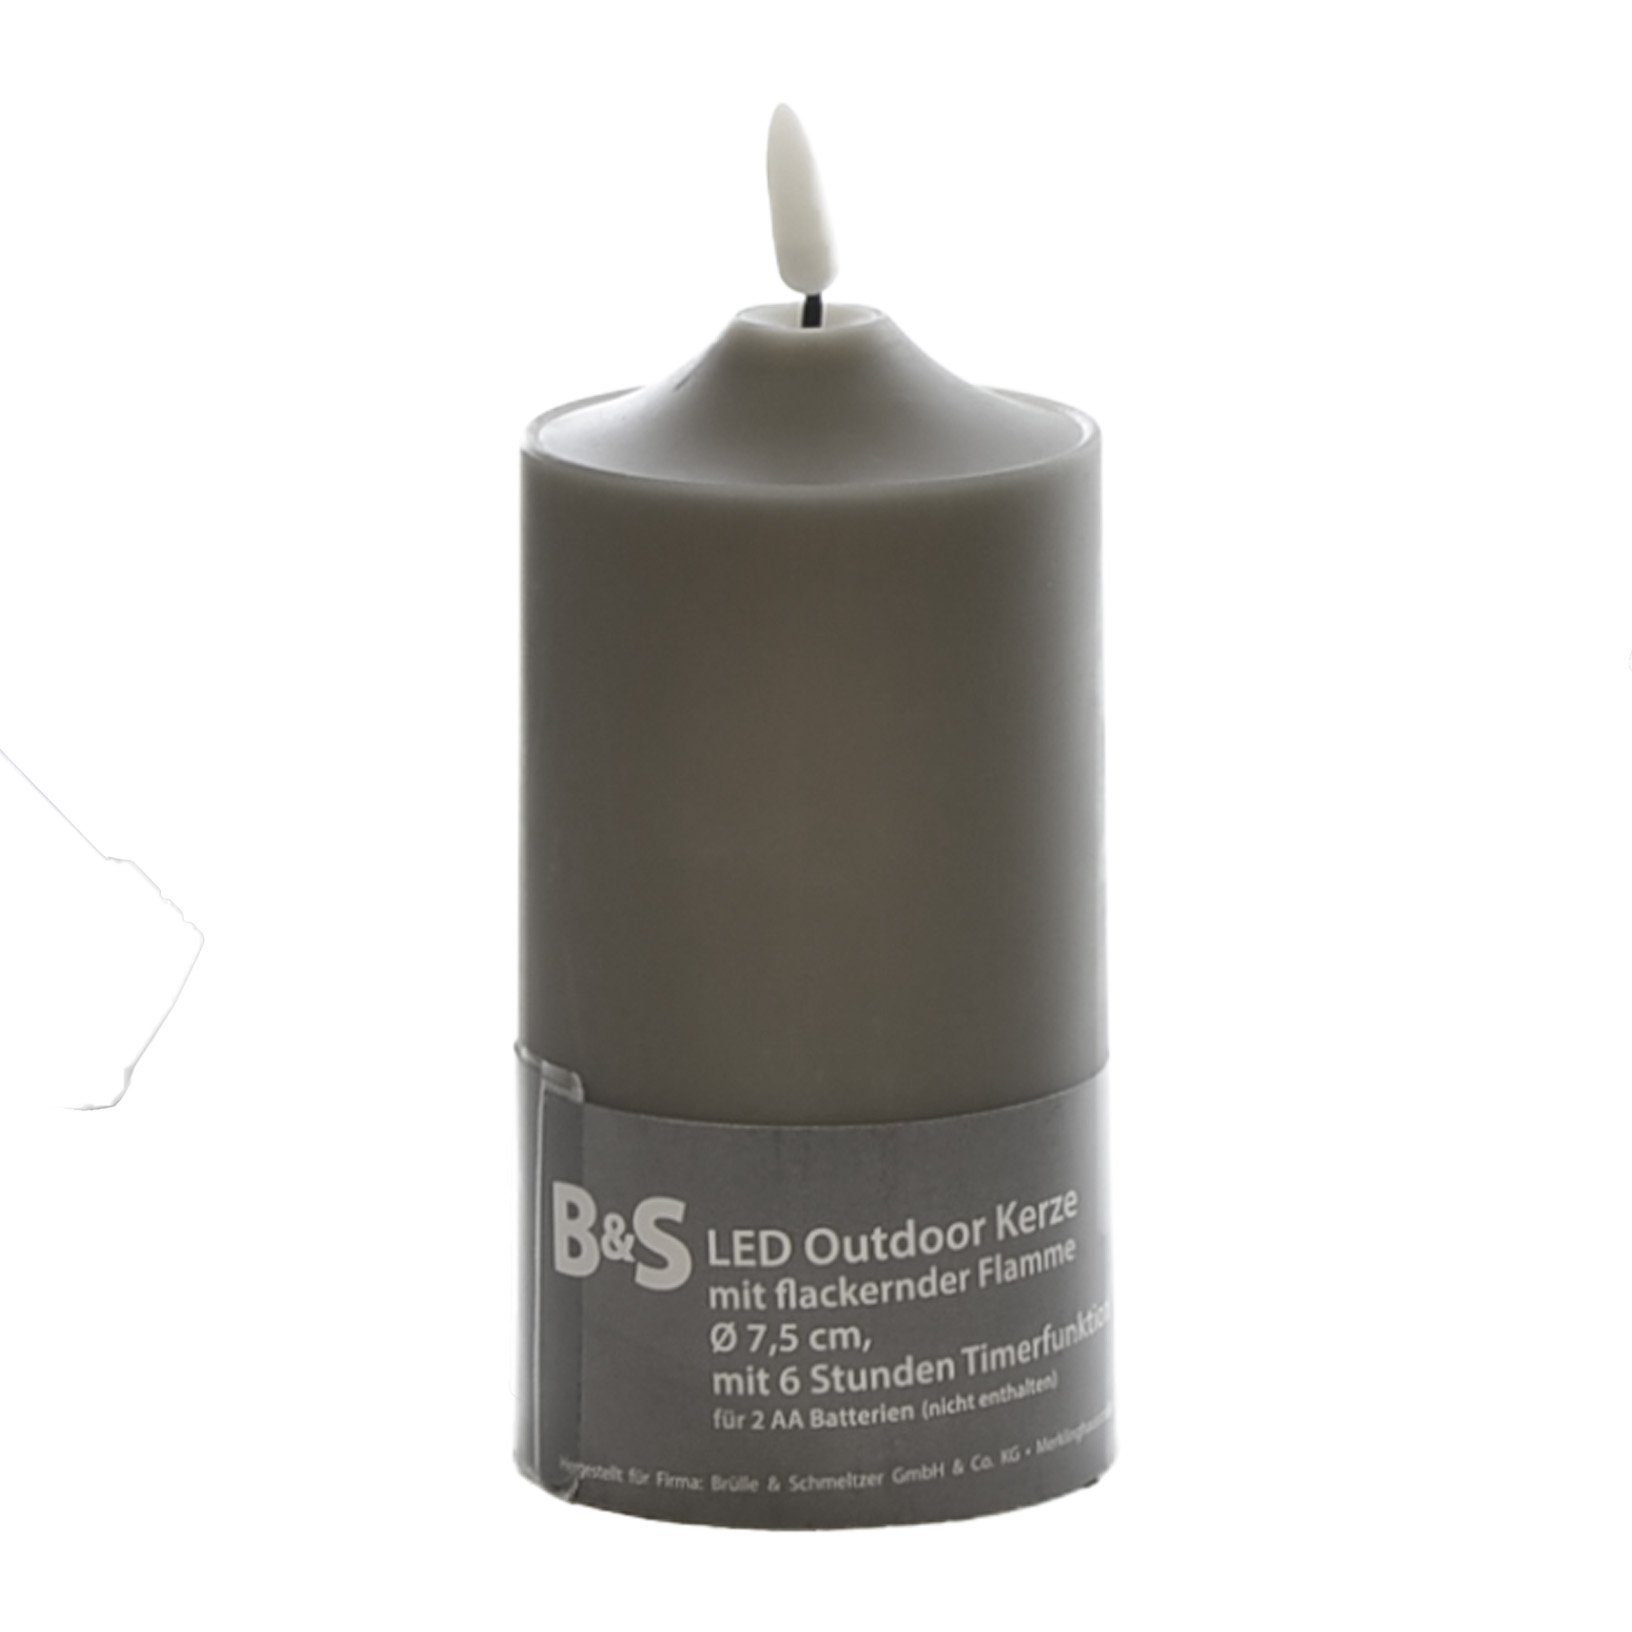 B&S LED-Kerze LED Kunststoffkerze Outdoor grau 15 x Ø 7,5 cm Flackerflamme & Timer